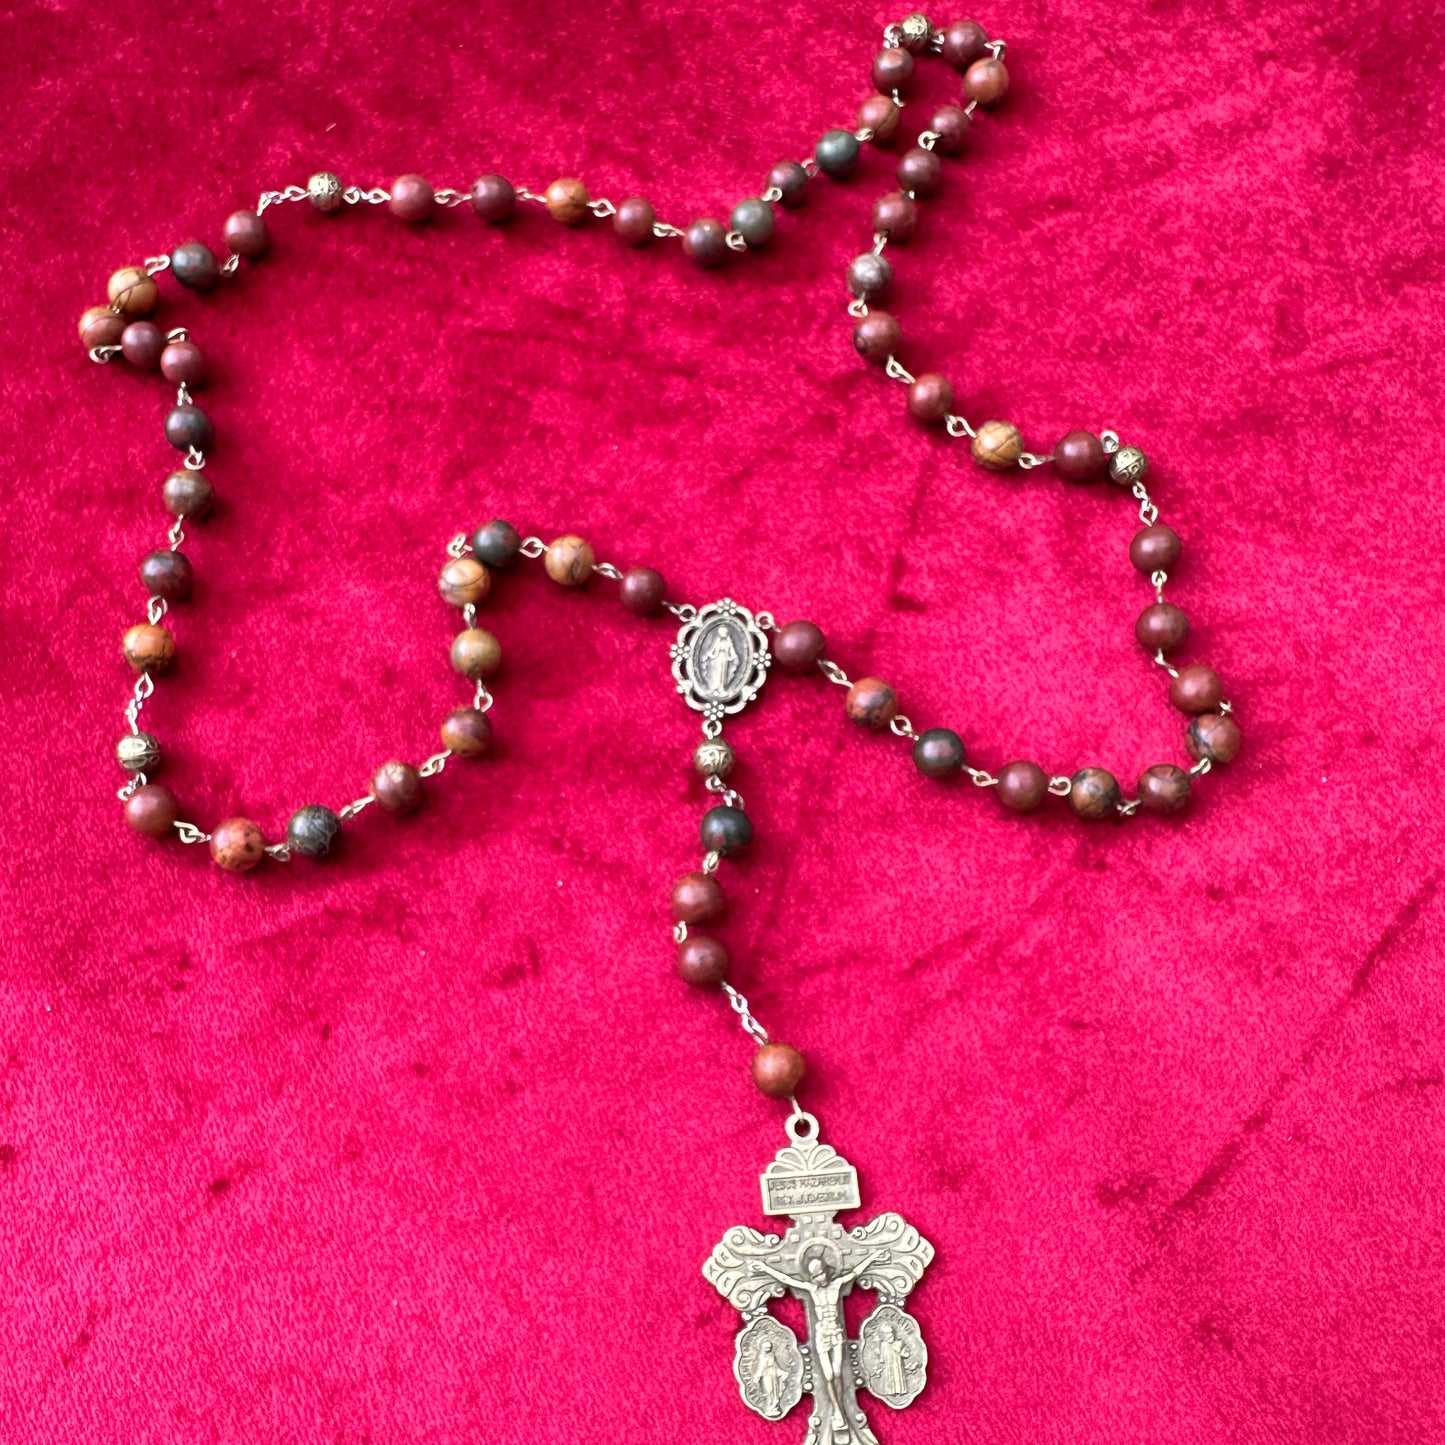 Catholic Rosary Beads Online